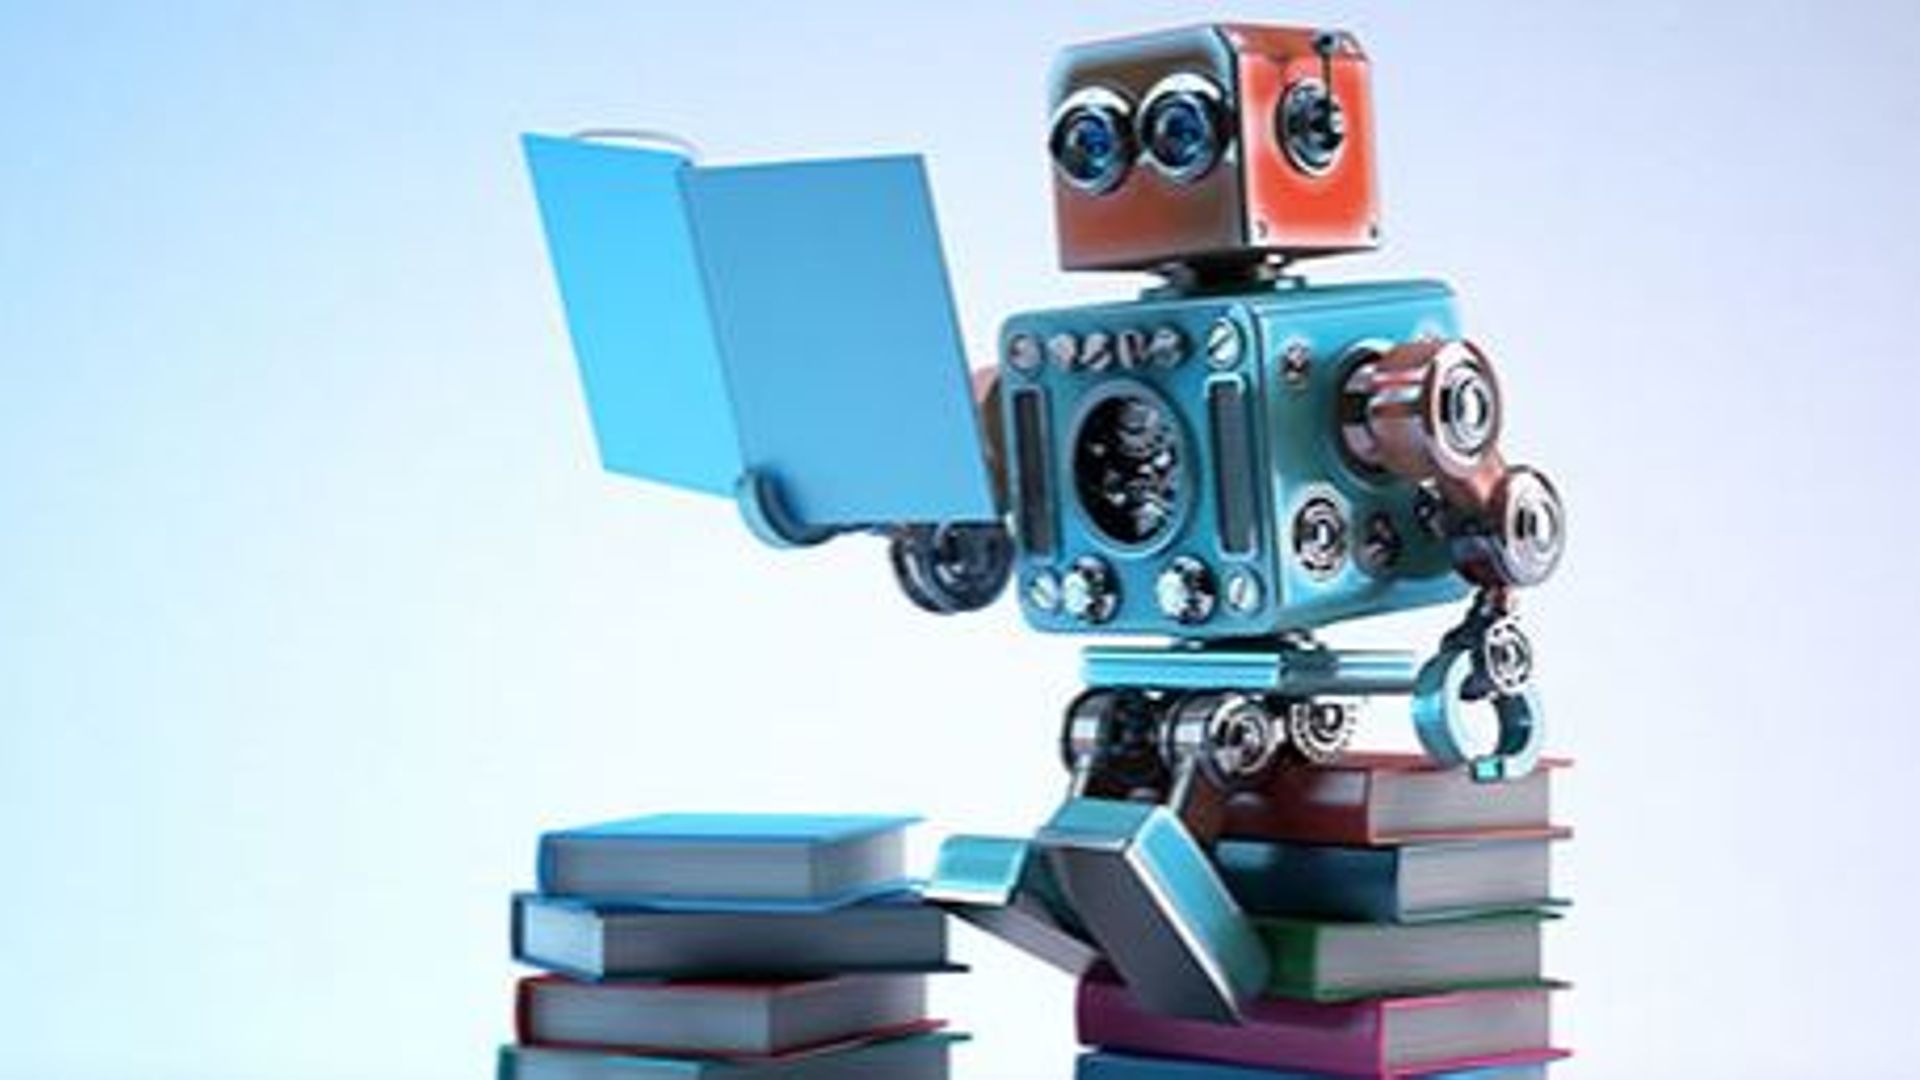 booksby-la-librairie-en-ligne-qui-ne-propose-que-des-livres-ecrits-par-des-robots